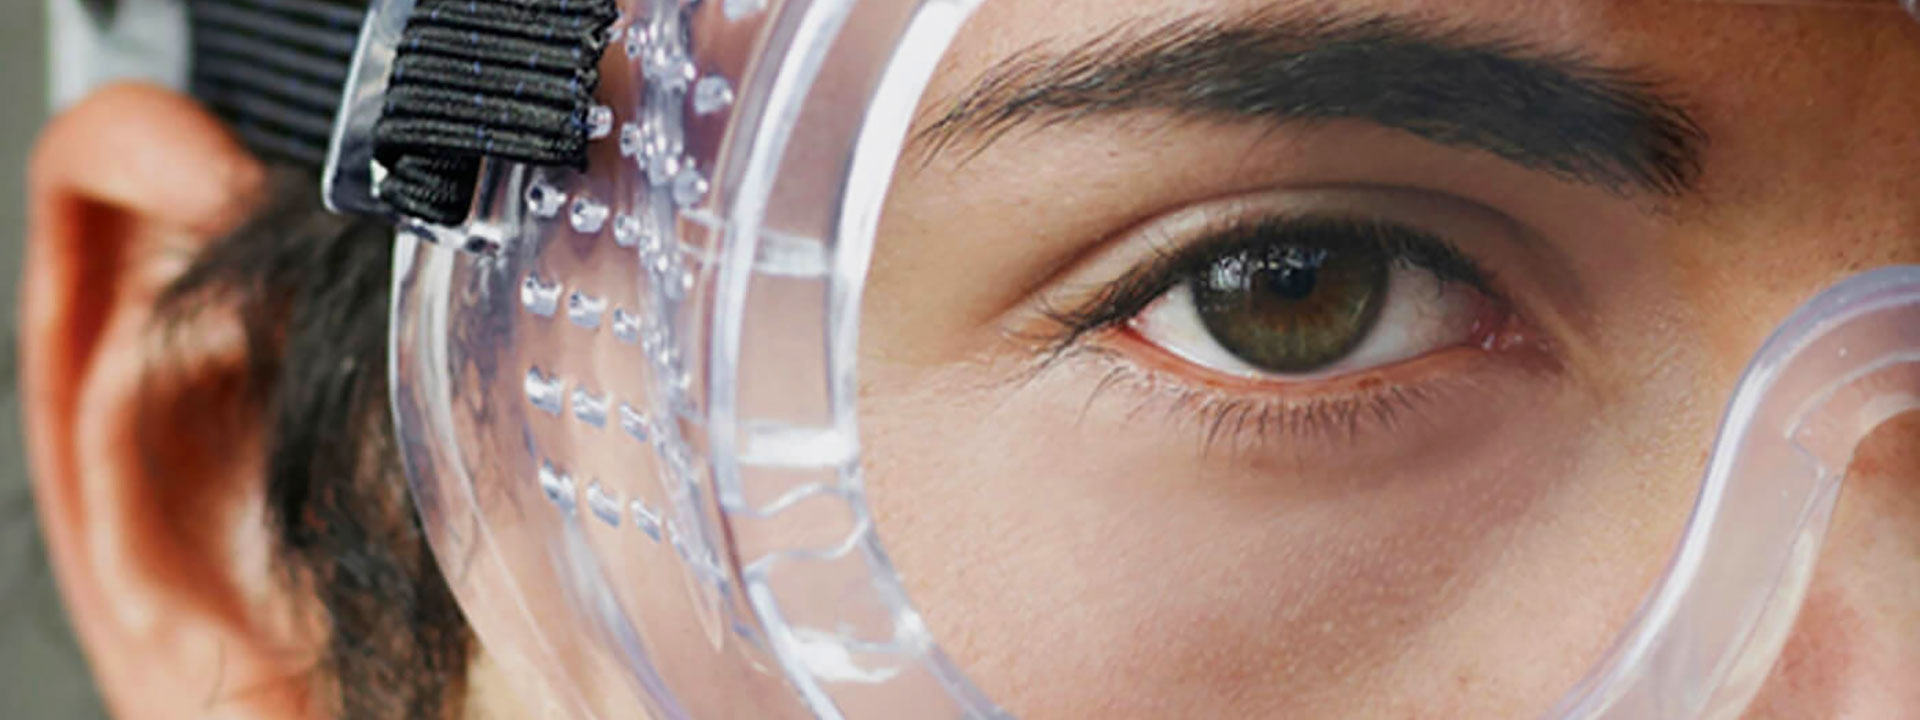 EN 208 Protección personal para los ojos: protección ocular adecuada para trabajar con láser y sistemas láser (protección ocular adecuada para láser)